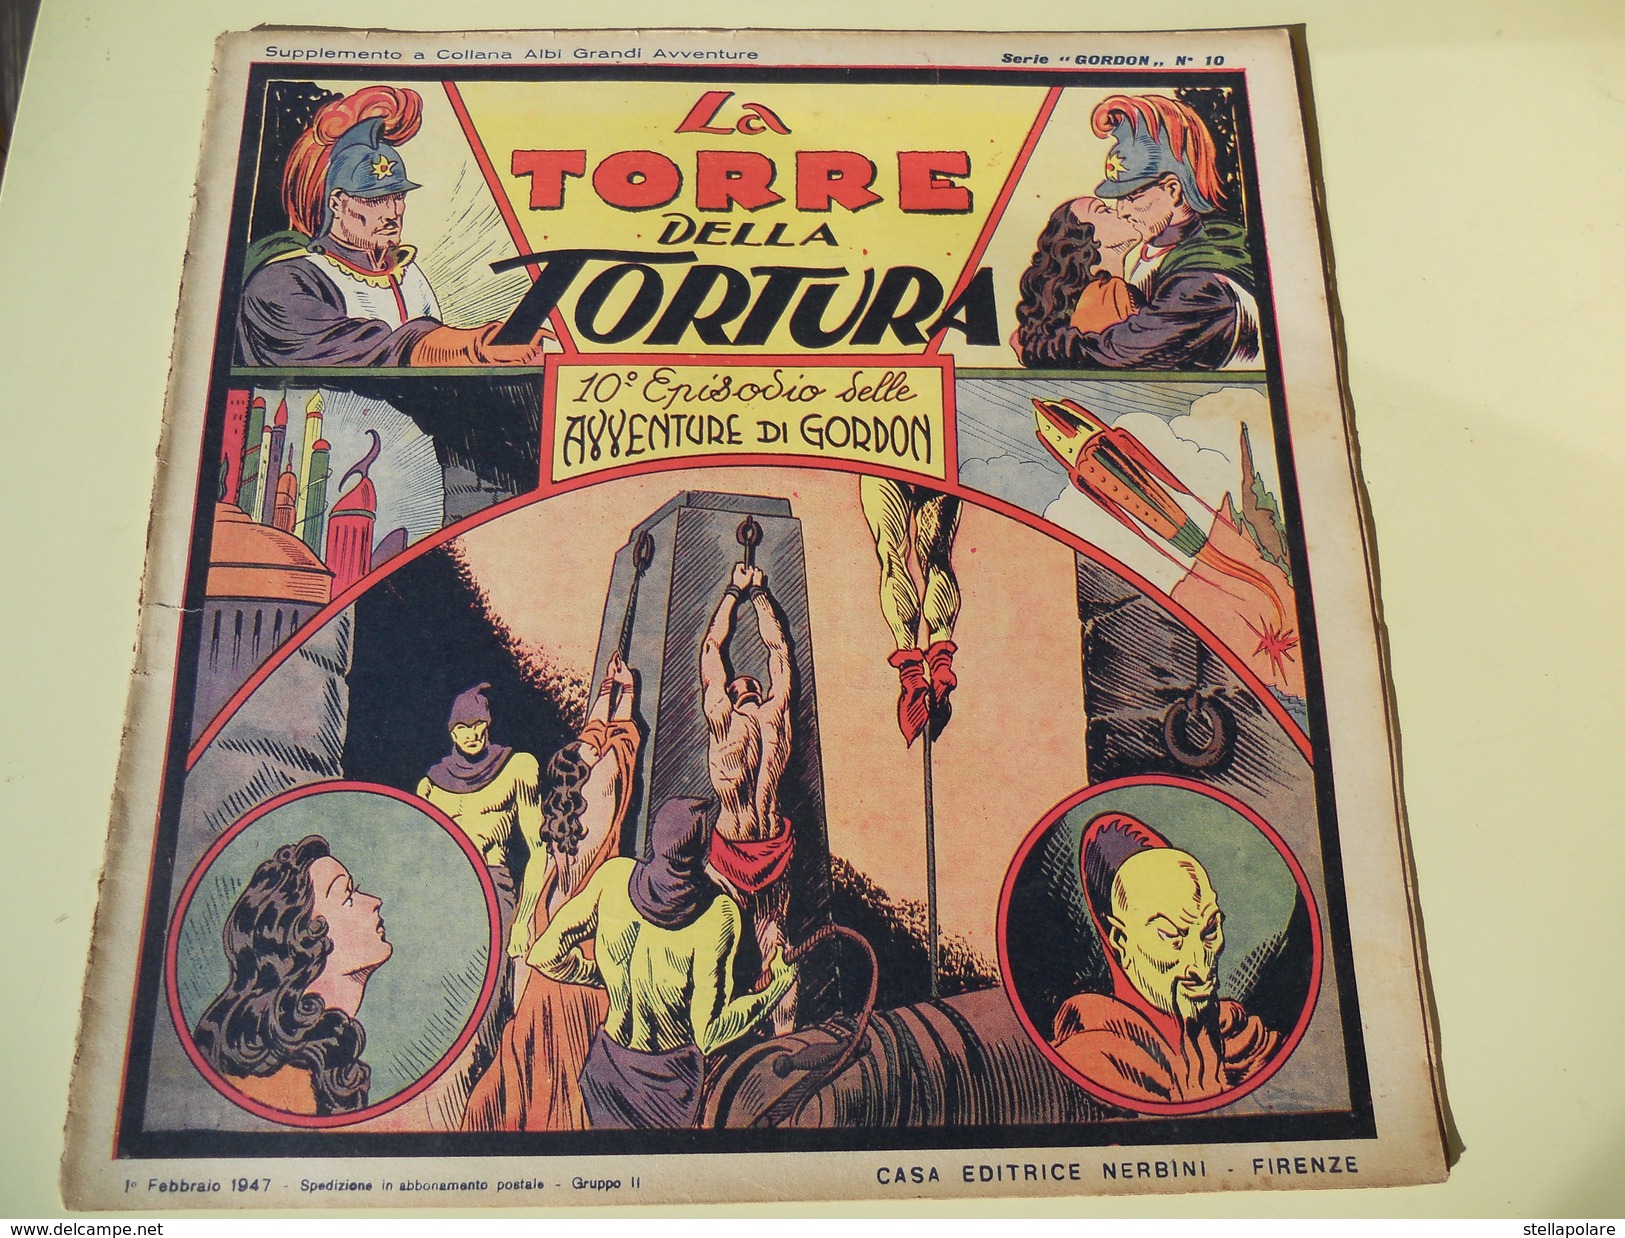 NERBINI - GRANDI AVVENTURE - SERIE GORDON N.10 - LA TORRE DELLA TORTURA - 1947 - Comics 1930-50